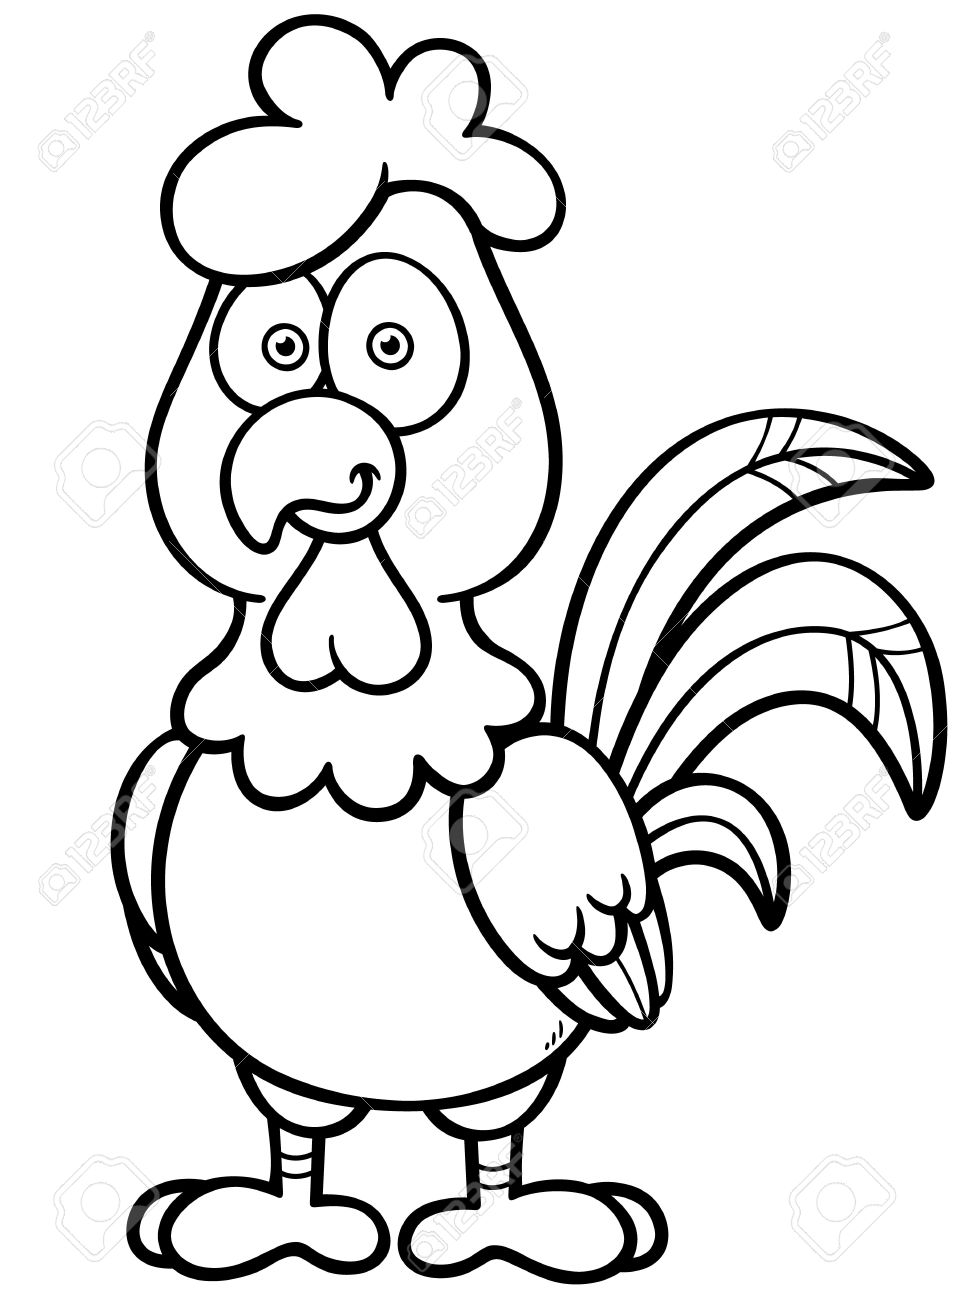 Vector illustration of cartoon chicken